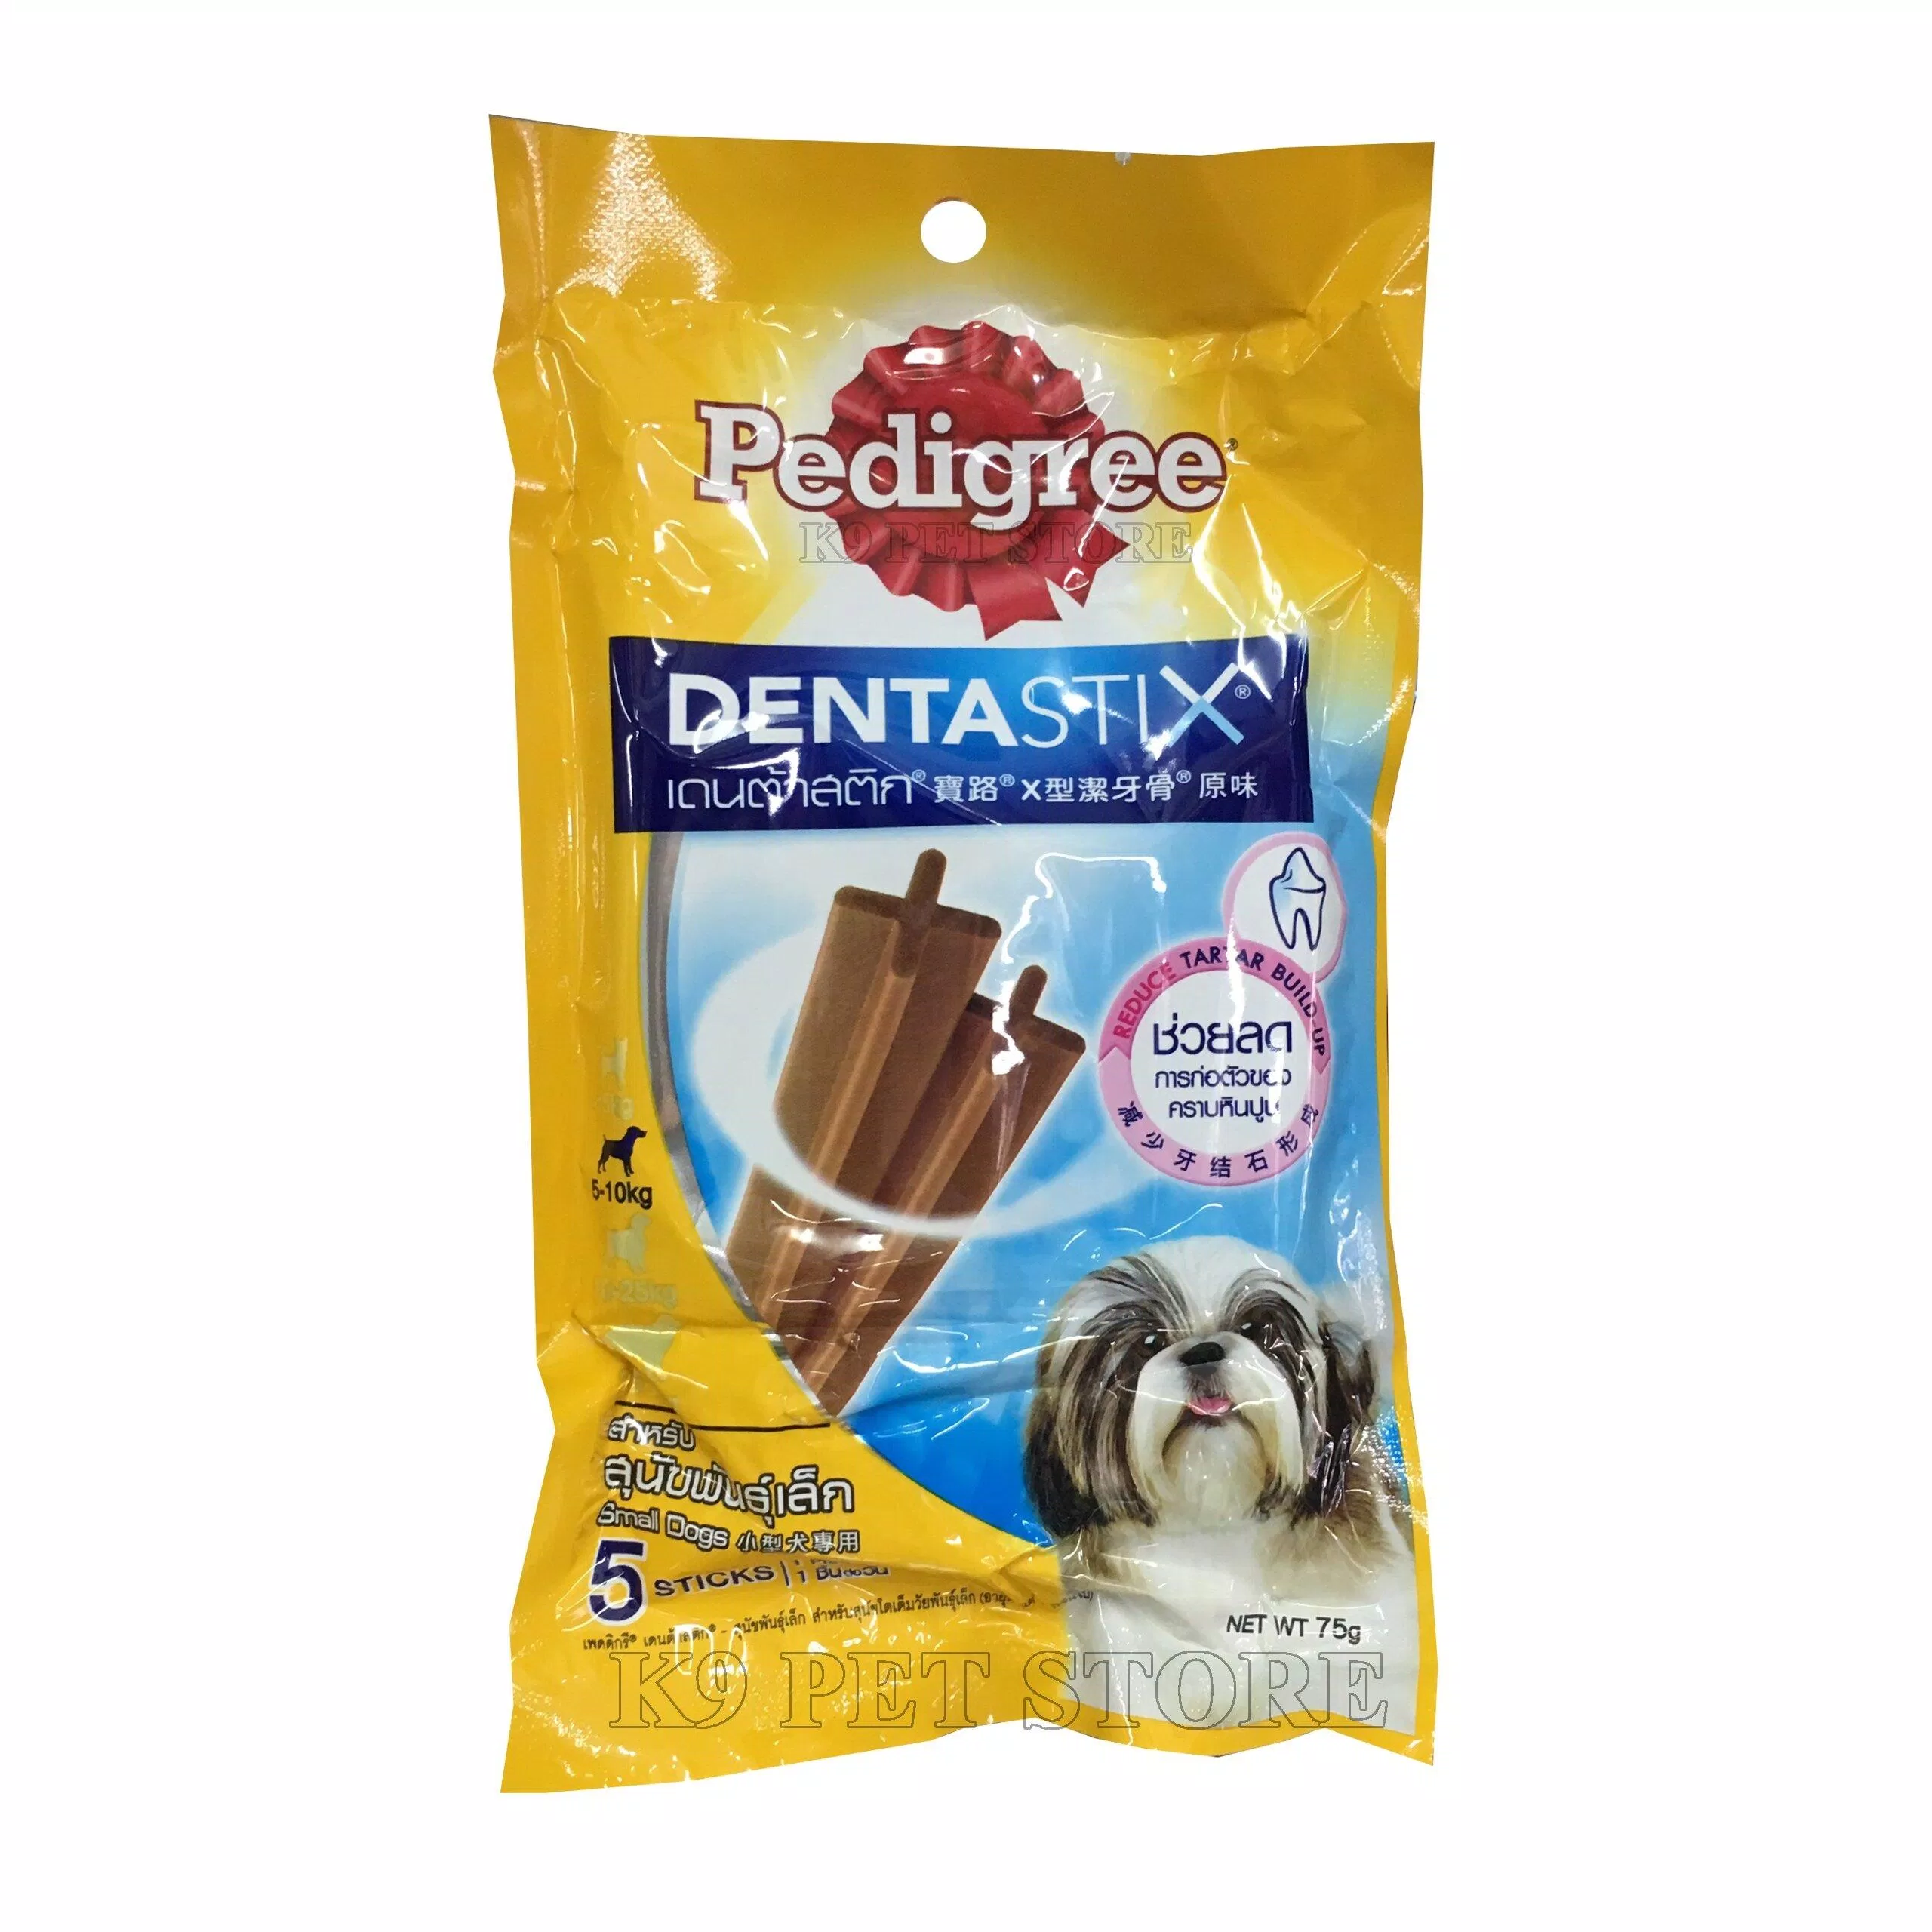 Xương gặm Pedigree - giải pháp tiện lợi bảo vệ răng miệng cho cún.